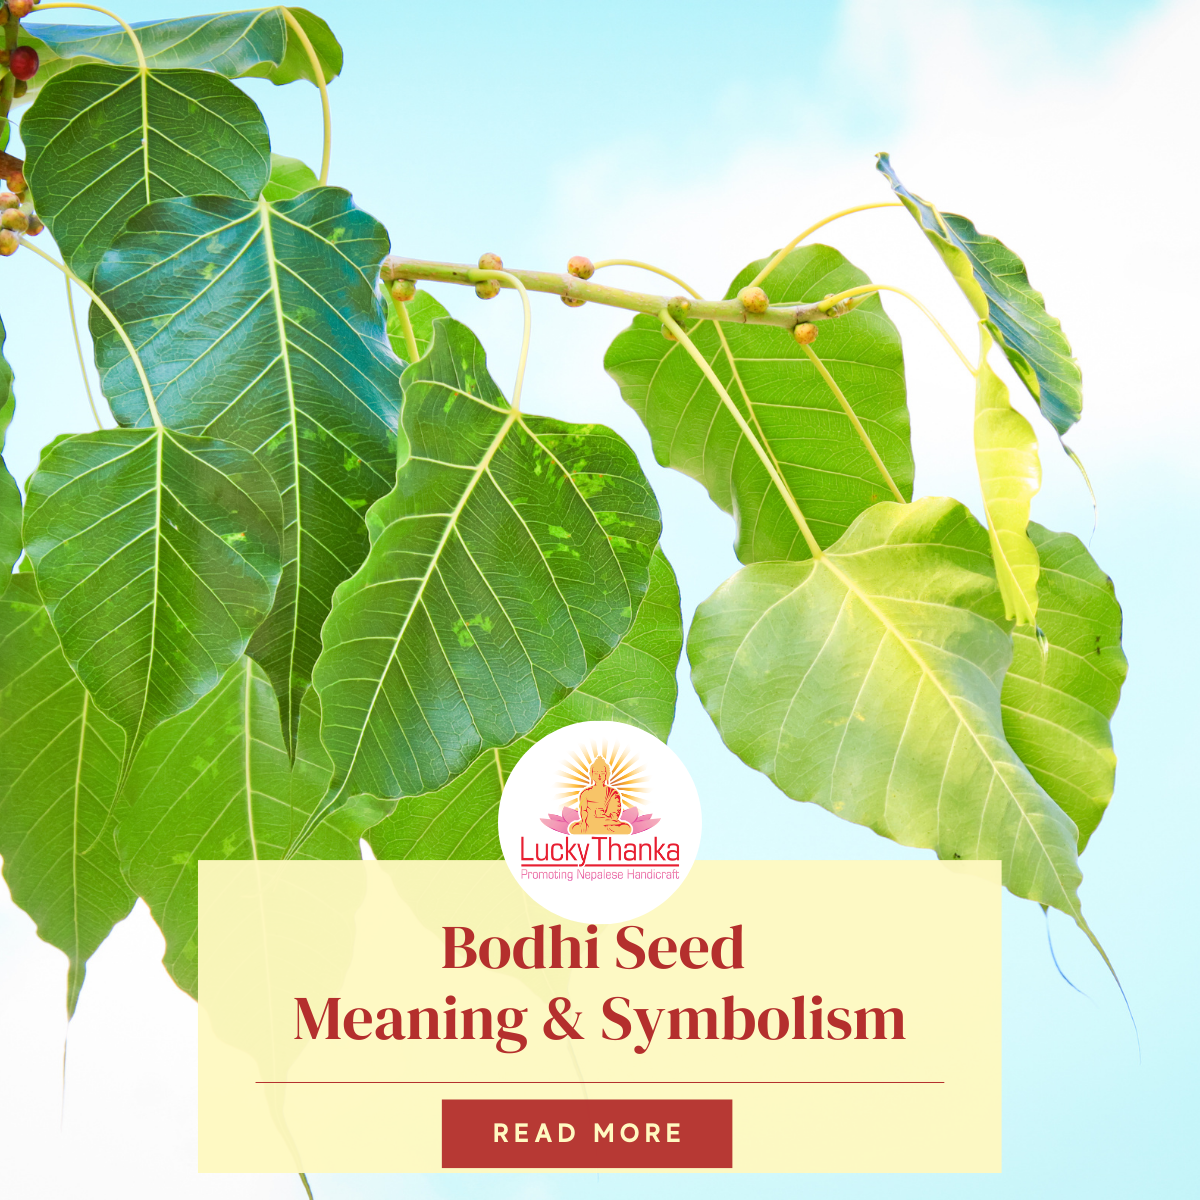 https://luckythanka.com/cdn/shop/articles/Bodhi_Seeds.png?v=1696586238&width=1200